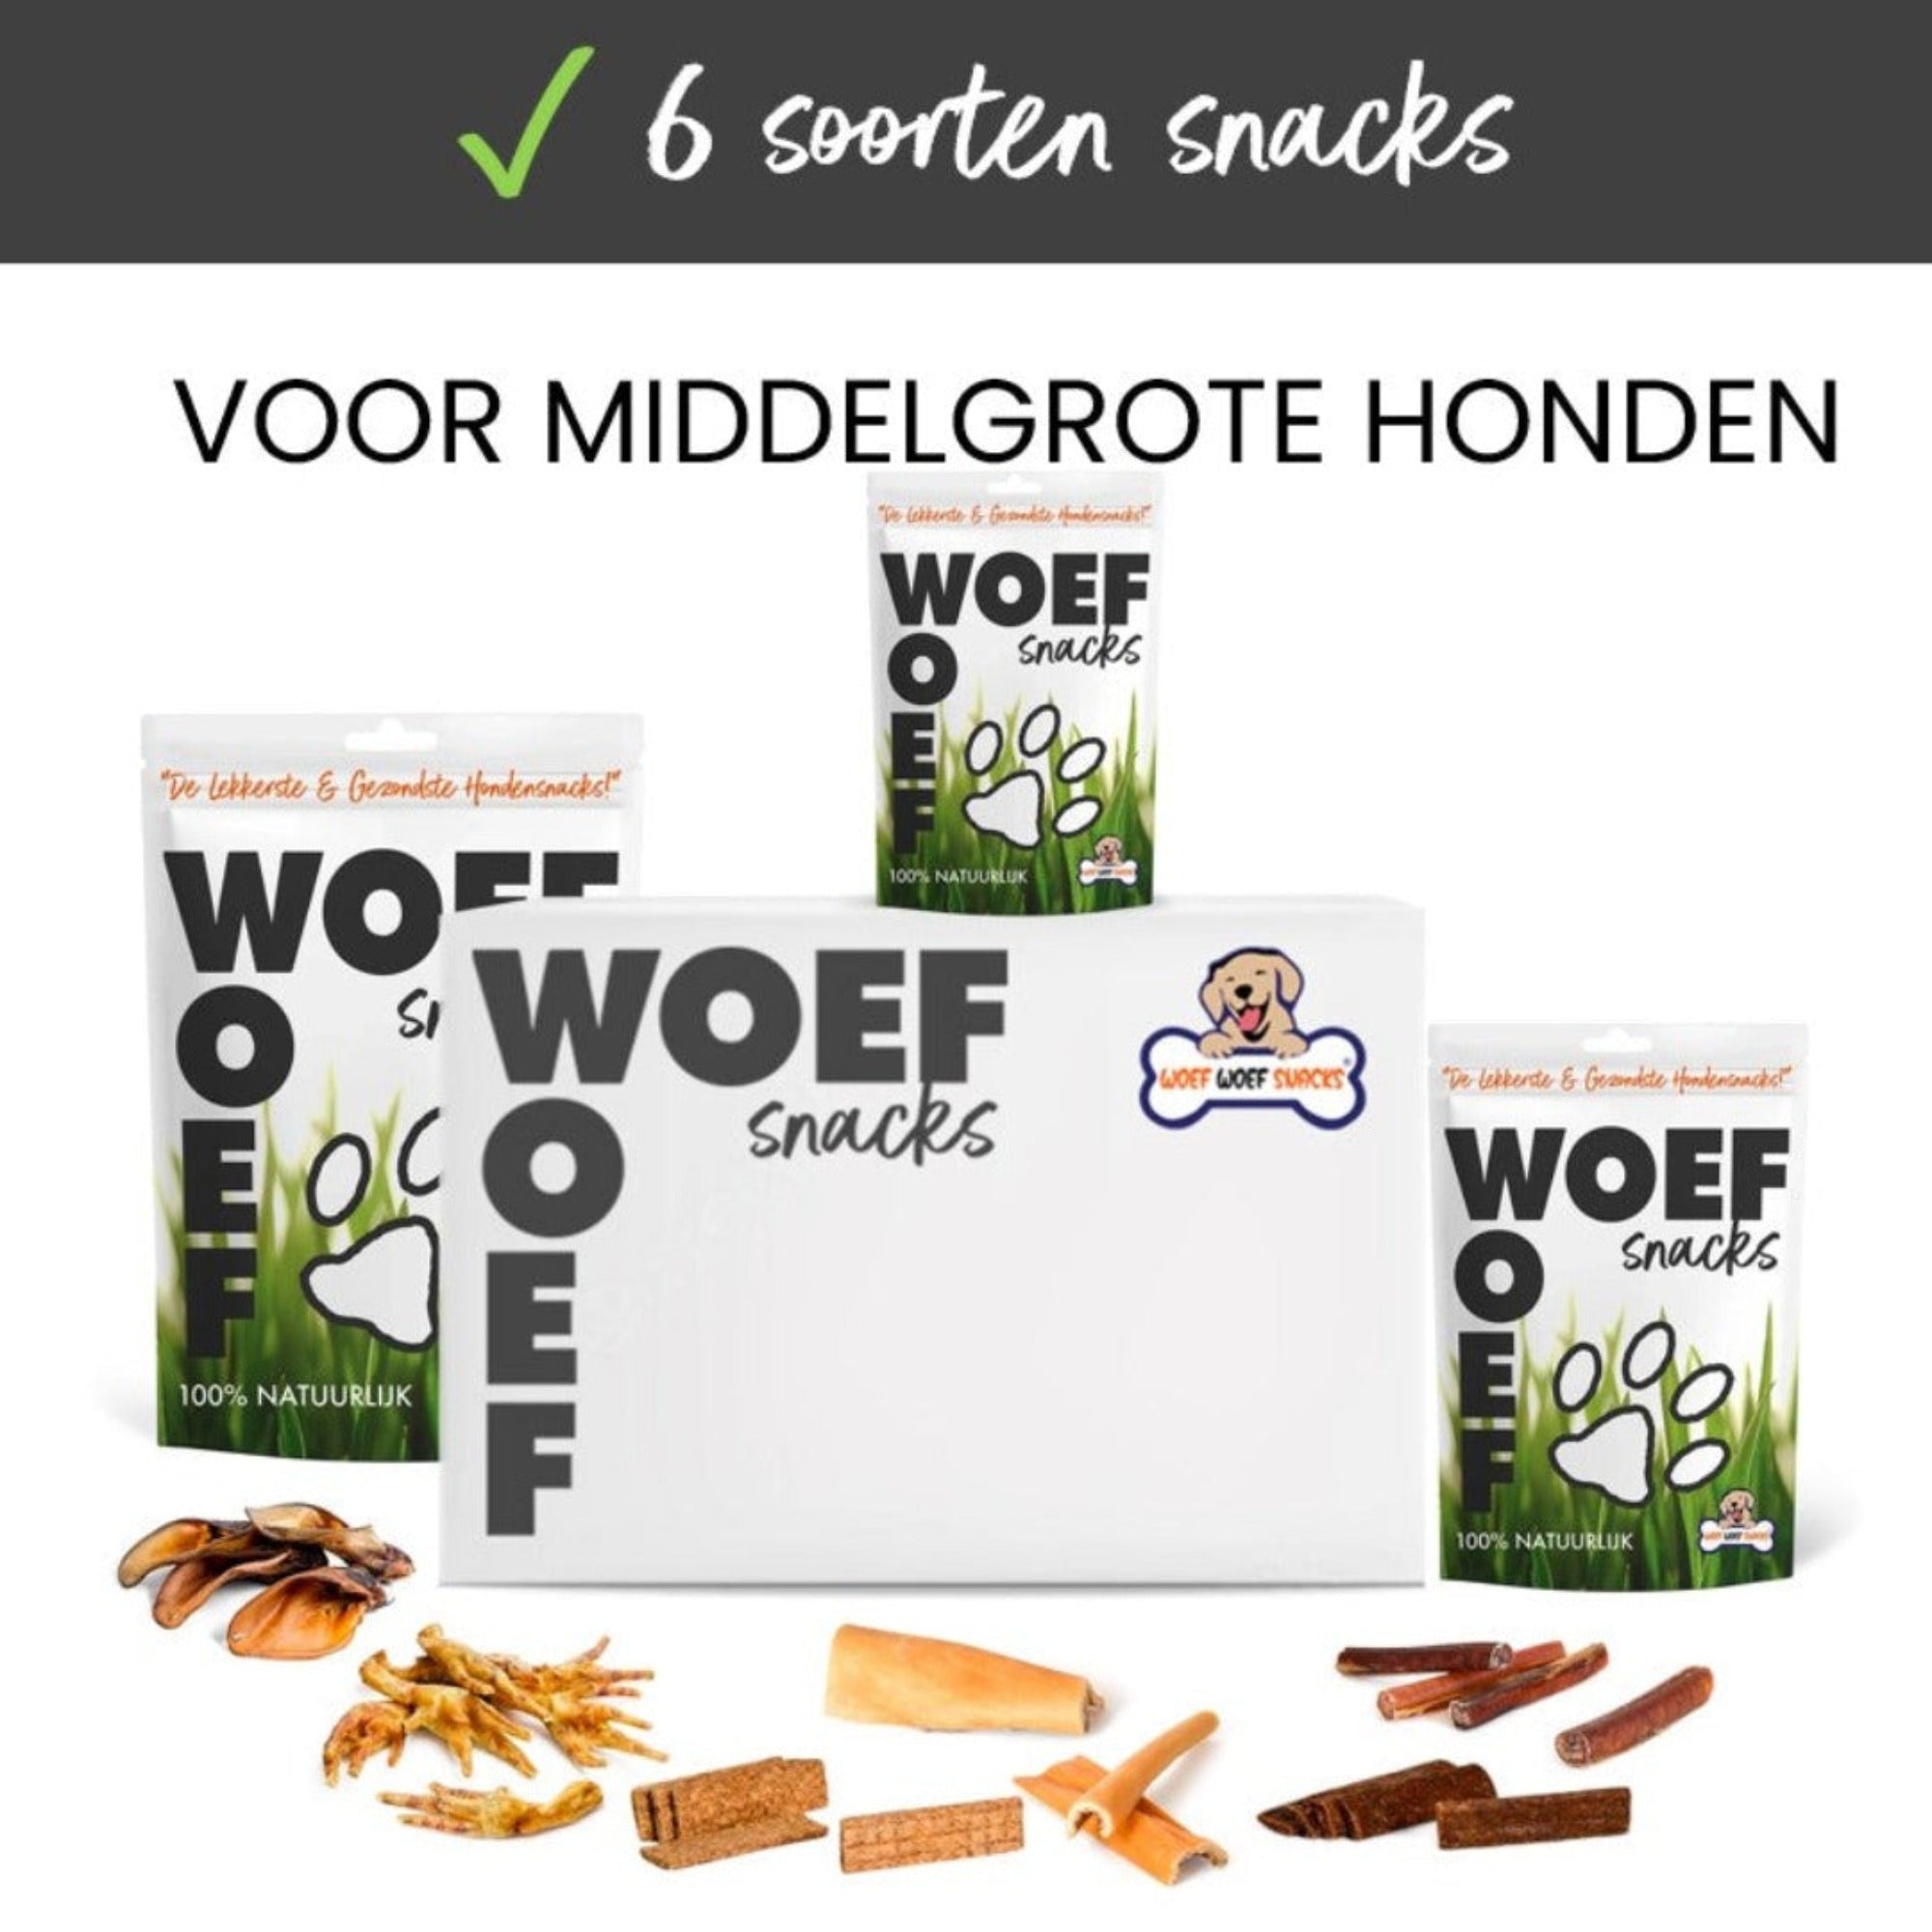 De Woef Woef Snackbox voor middelgrote honden. Het bevat 6 verschillende soorten snacks. Verder is in de afbeelding te de verpakking te zien en een aantal natuurlijke hondensnacks.